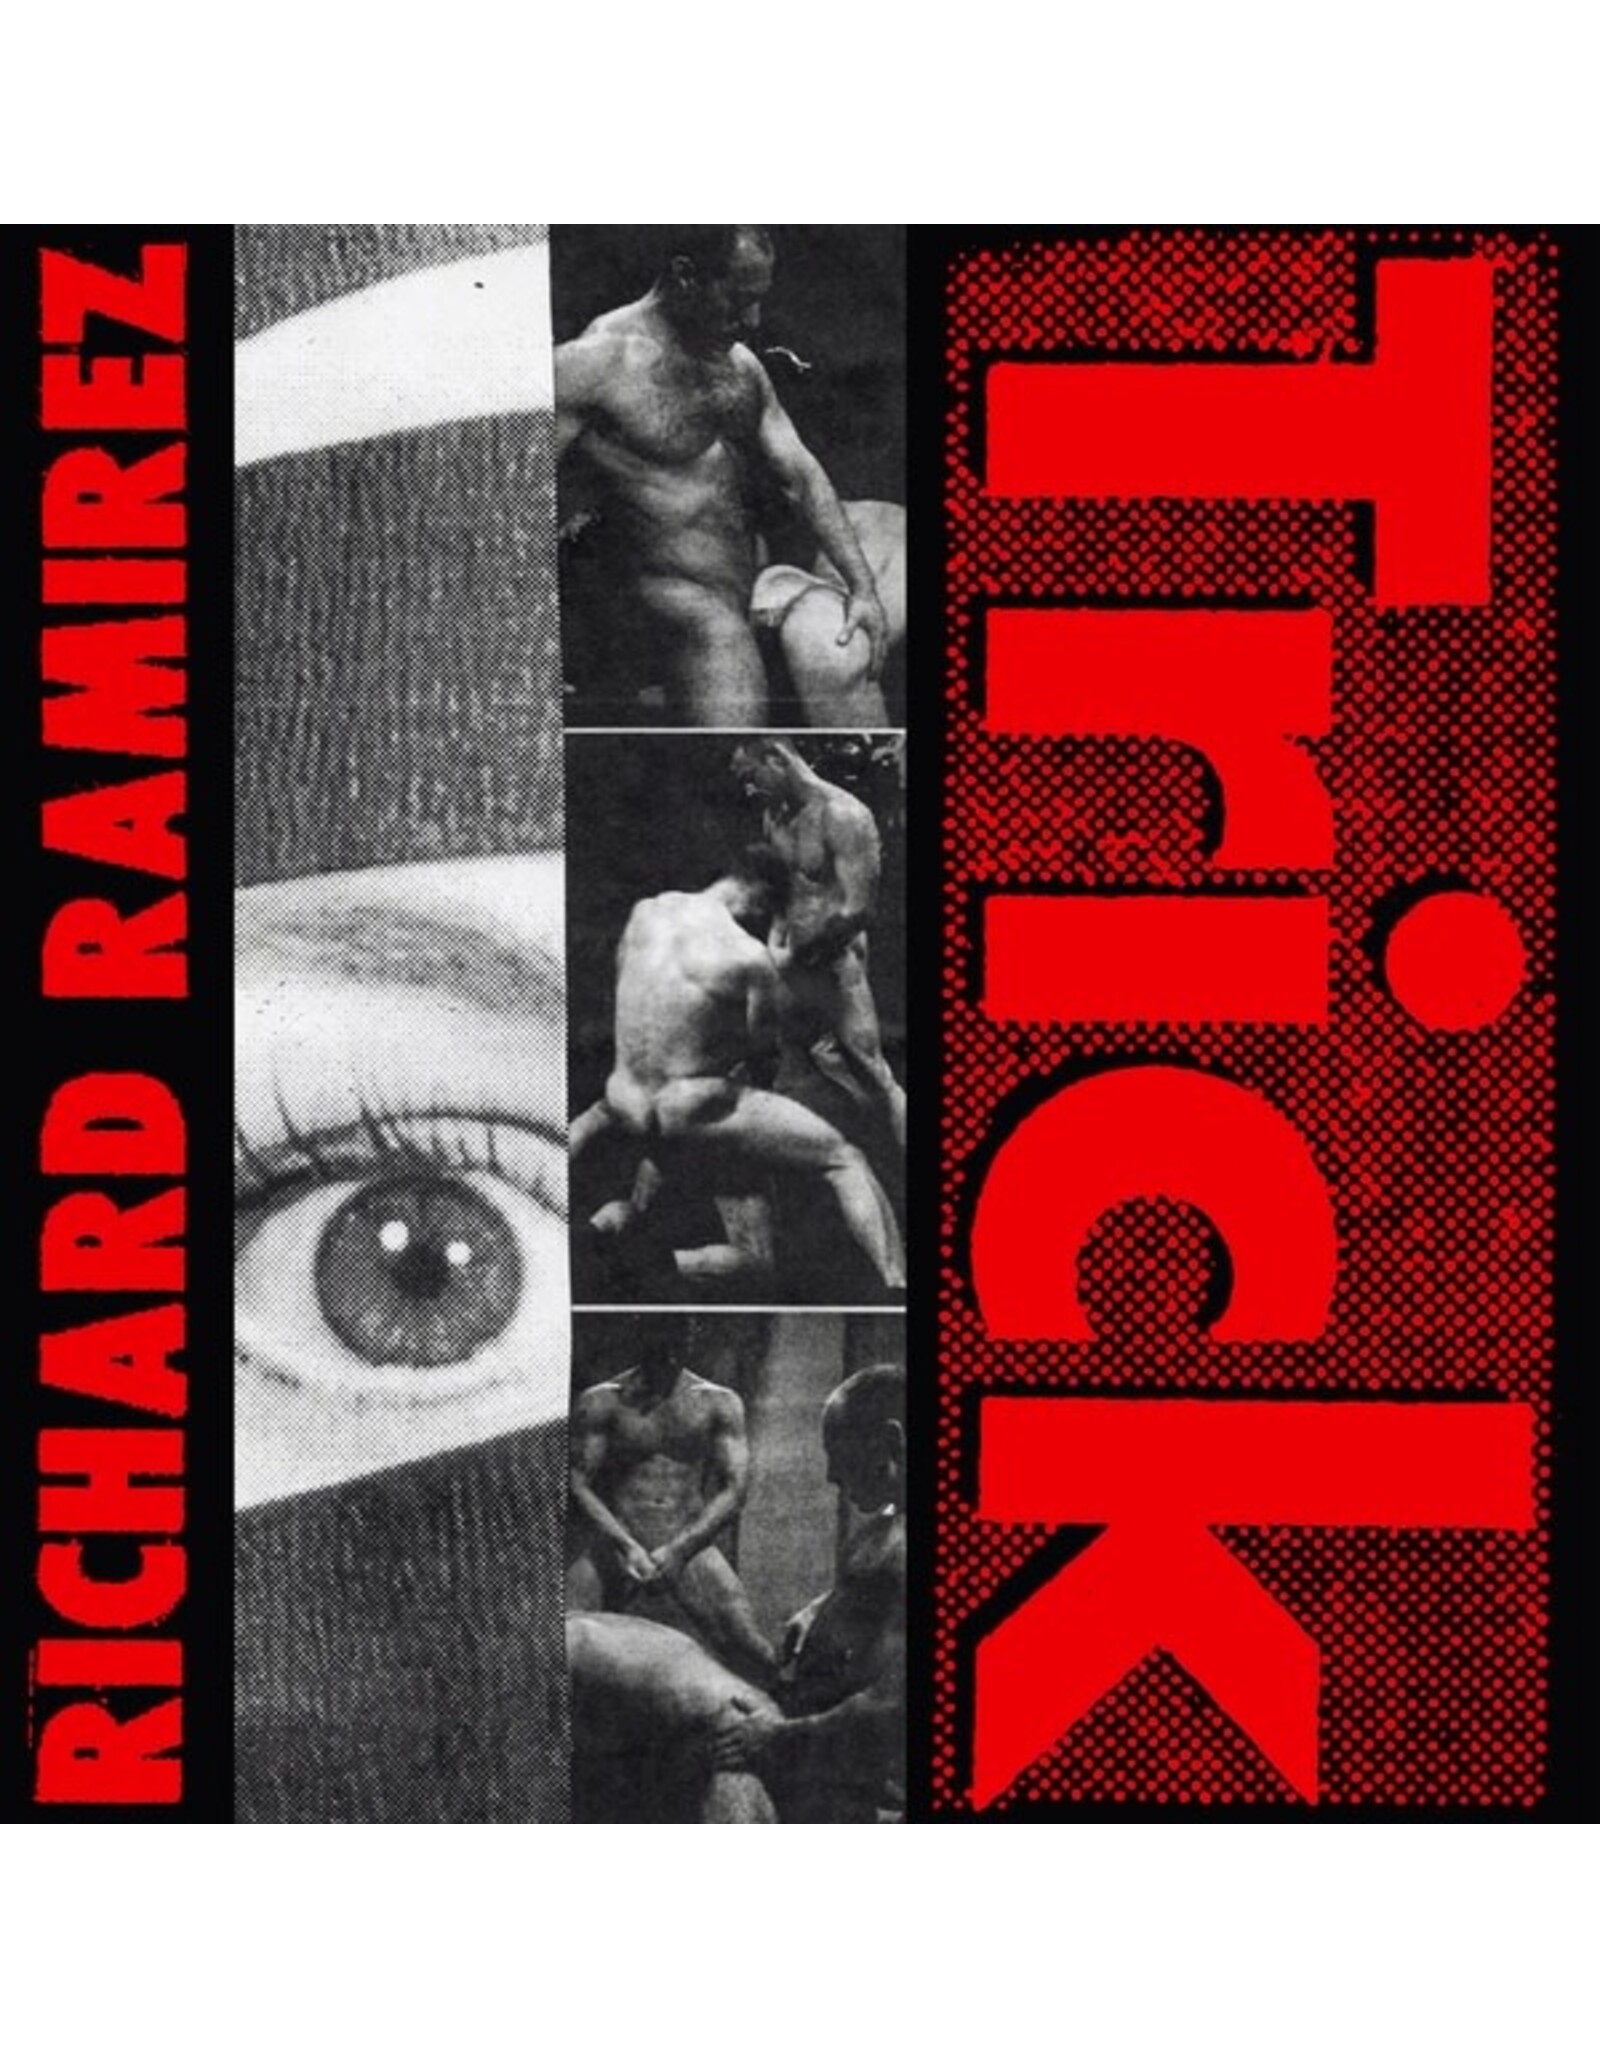 Hospital Ramirez, Richard: Trick LP